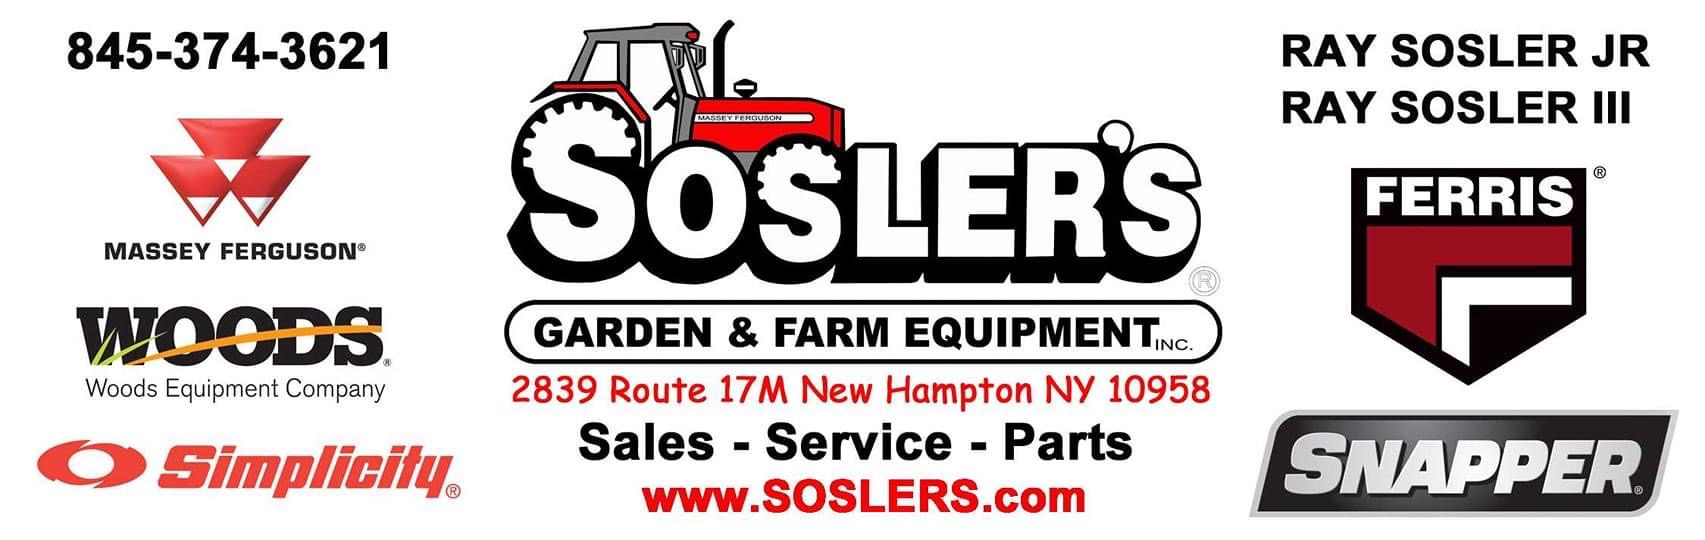 Sosler's Garden and Farm Equipment